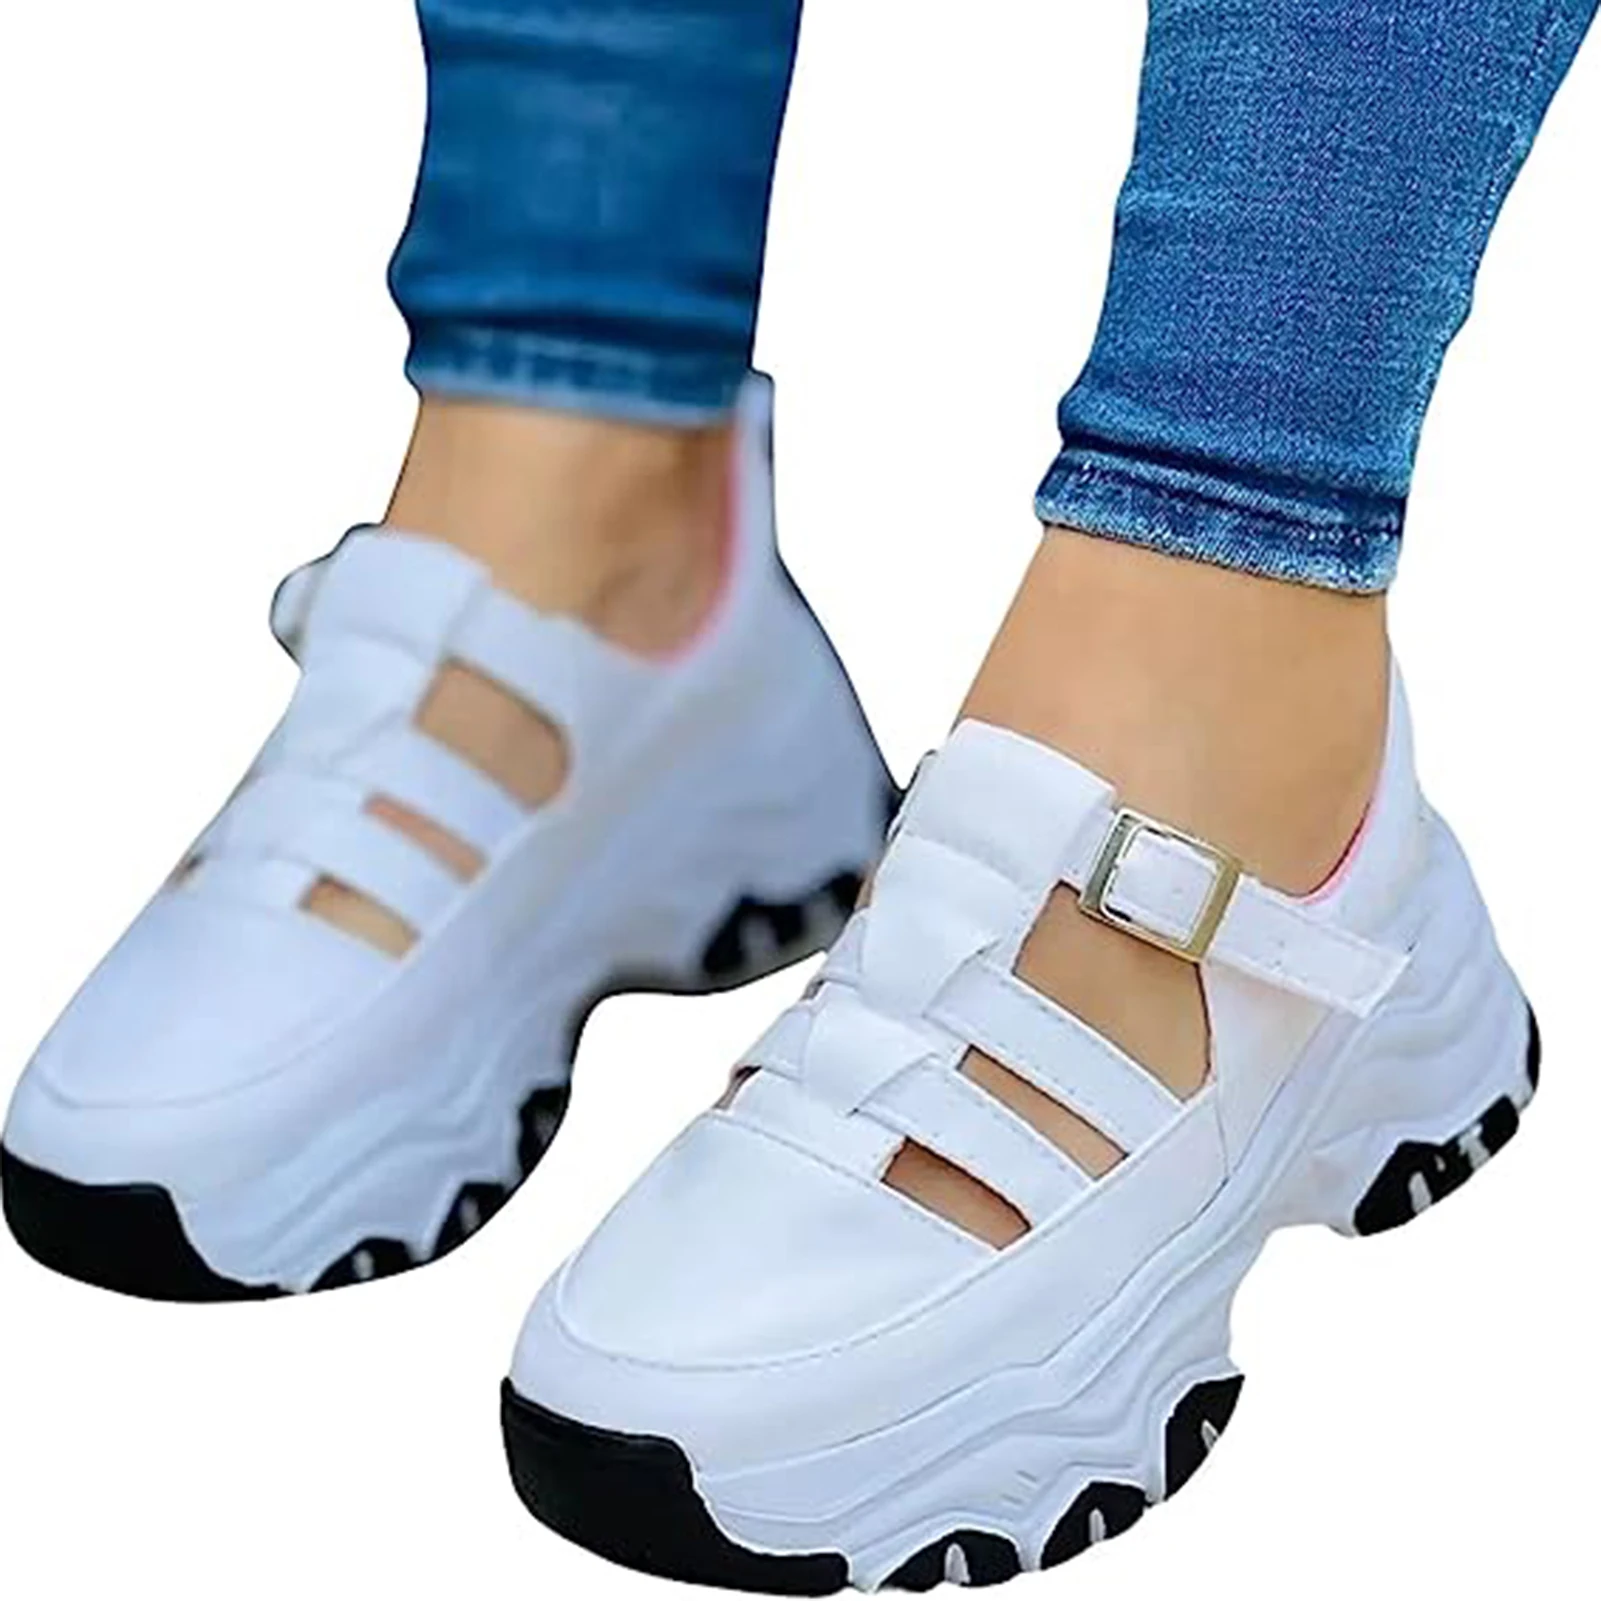 Zapatos de malla informales para mujer, calzado deportivo con suela antideslizante, adecuado para acampar, caminar en interiores